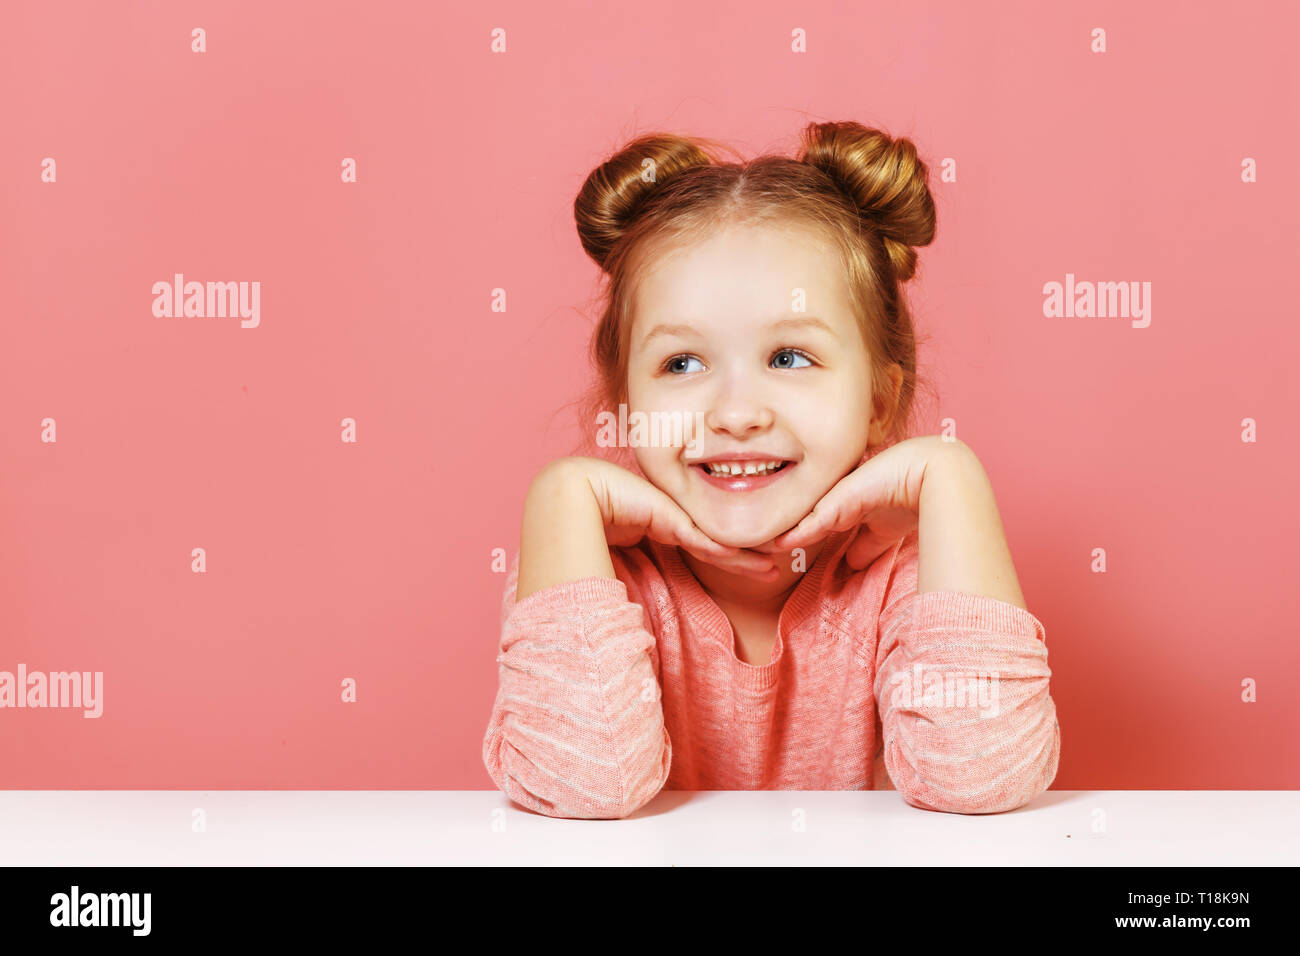 Close-up Portrait von Nizza schöne attraktive faszinierende Winsome fröhliche kleine Kind Mädchen mit Brötchen bis zur Seite Blick auf rosa Hintergrund Stockfoto